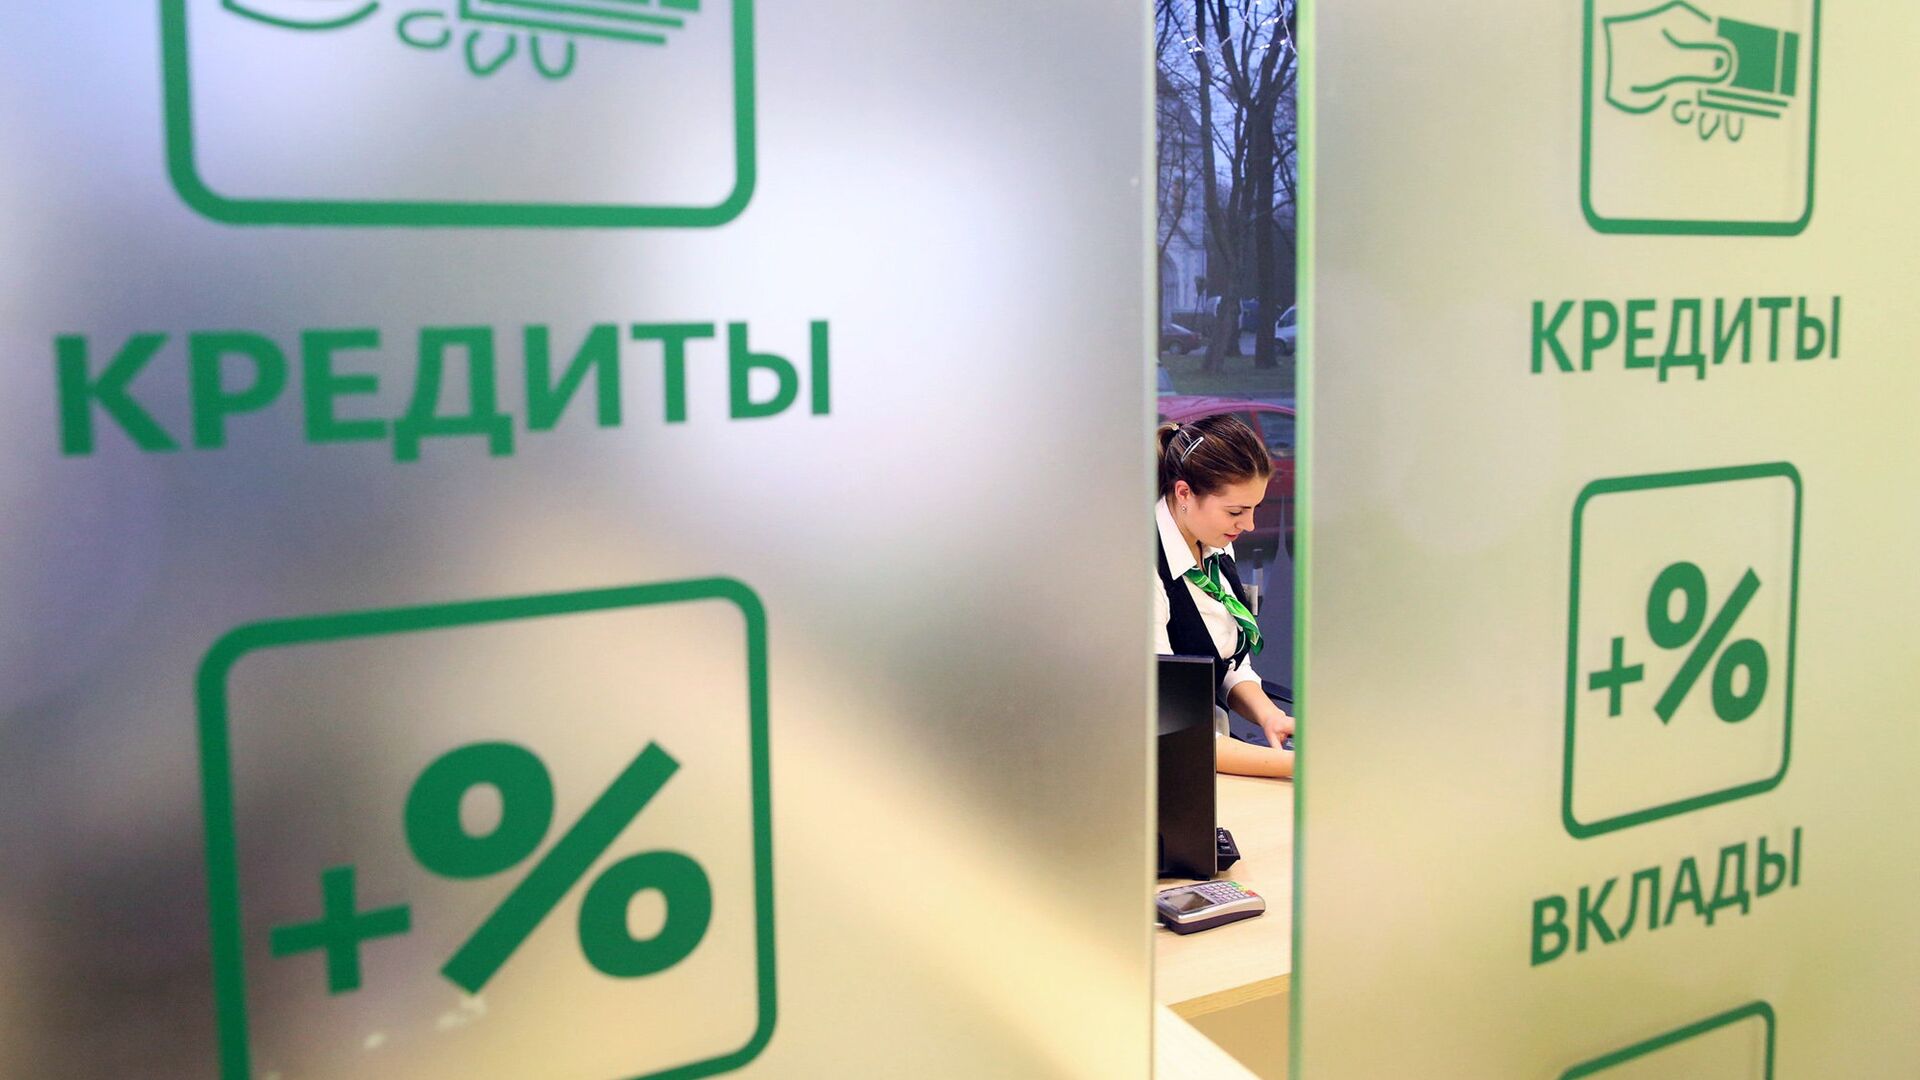 Заемщик вправе застраховаться в любой компании ✓ Новости Рыбинска и не только